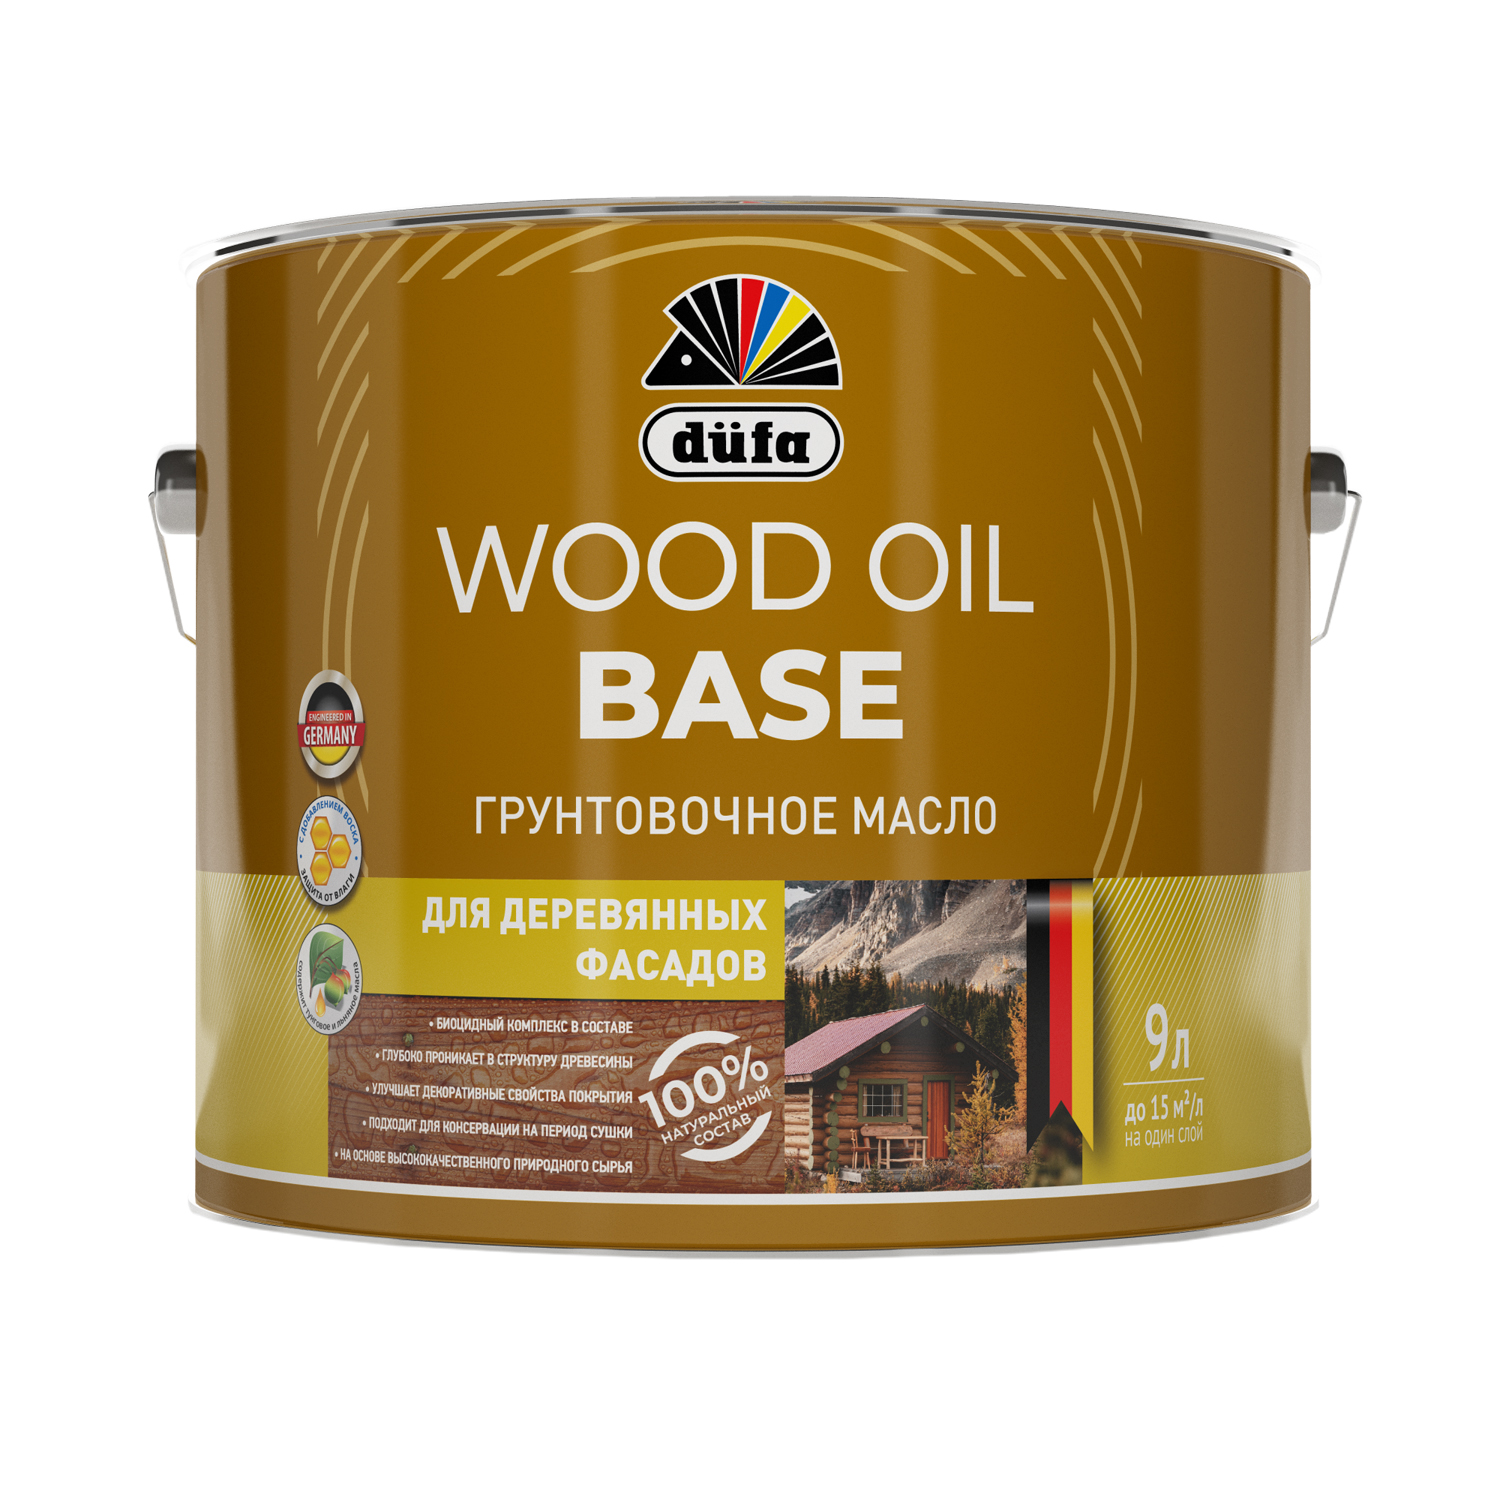 Грунтовочное масло Dufa (Дюфа) WOOD OIL BASE 9л МП00-011638 грунтовочное масло для дерева dufa дюфа wood oil base 0 9 л